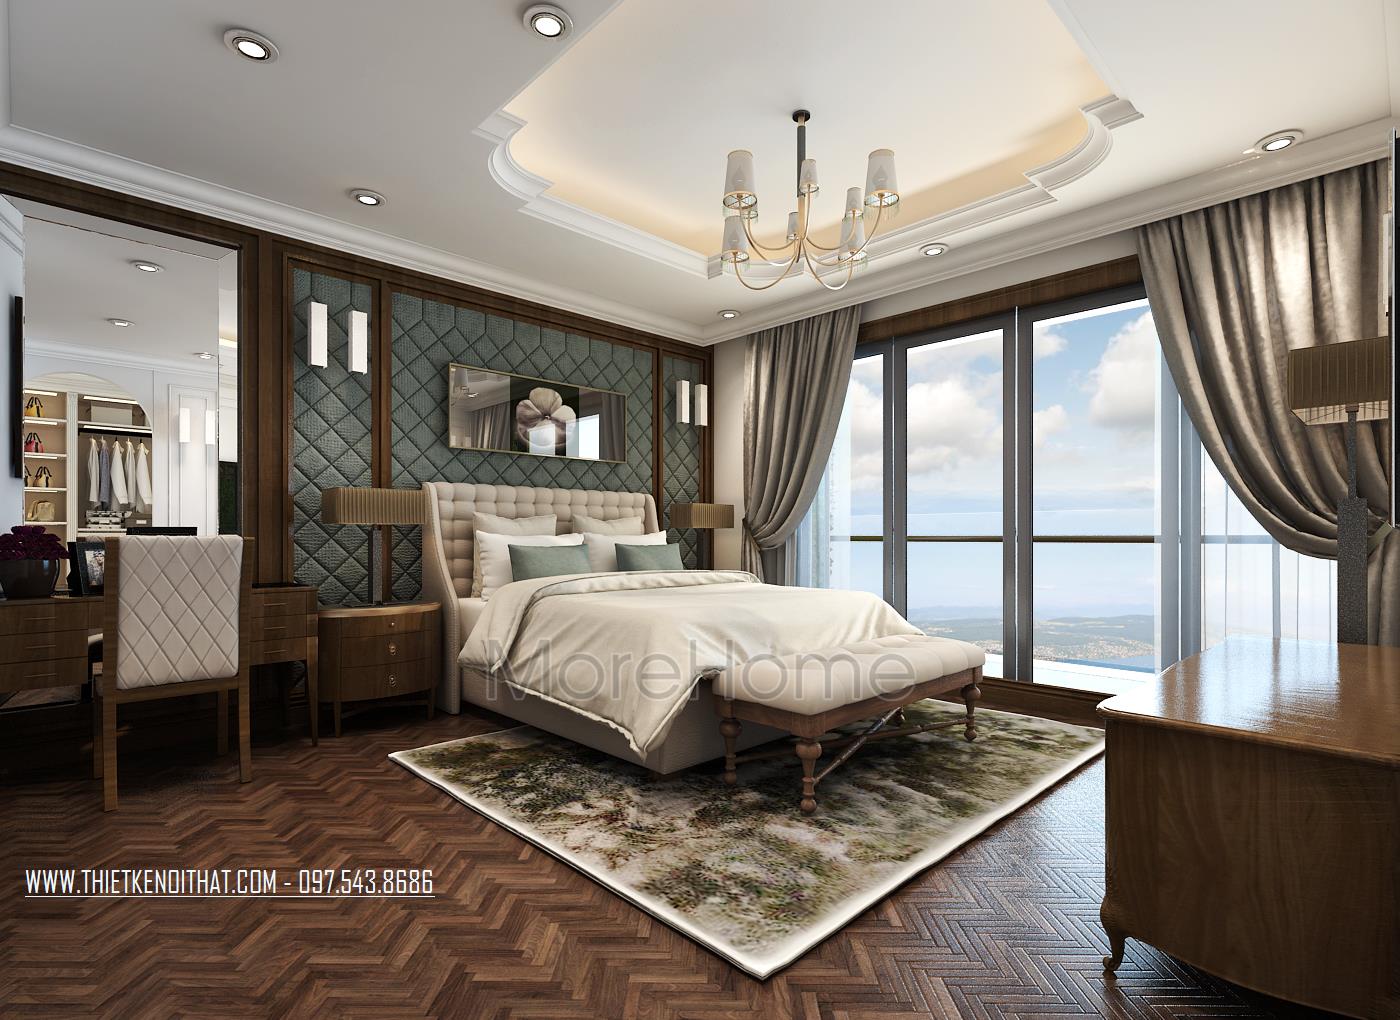 Hãy cùng khám phá thiết kế nội thất tân cổ điển sang trọng của khách sạn 5 sao tại Hà Nội. Chúng tôi tự hào mang đến một không gian đầy cảm hứng với sự kết hợp giữa hiện đại và cổ điển, tạo nên sự tinh tế và lịch lãm cho khách hàng của chúng tôi.